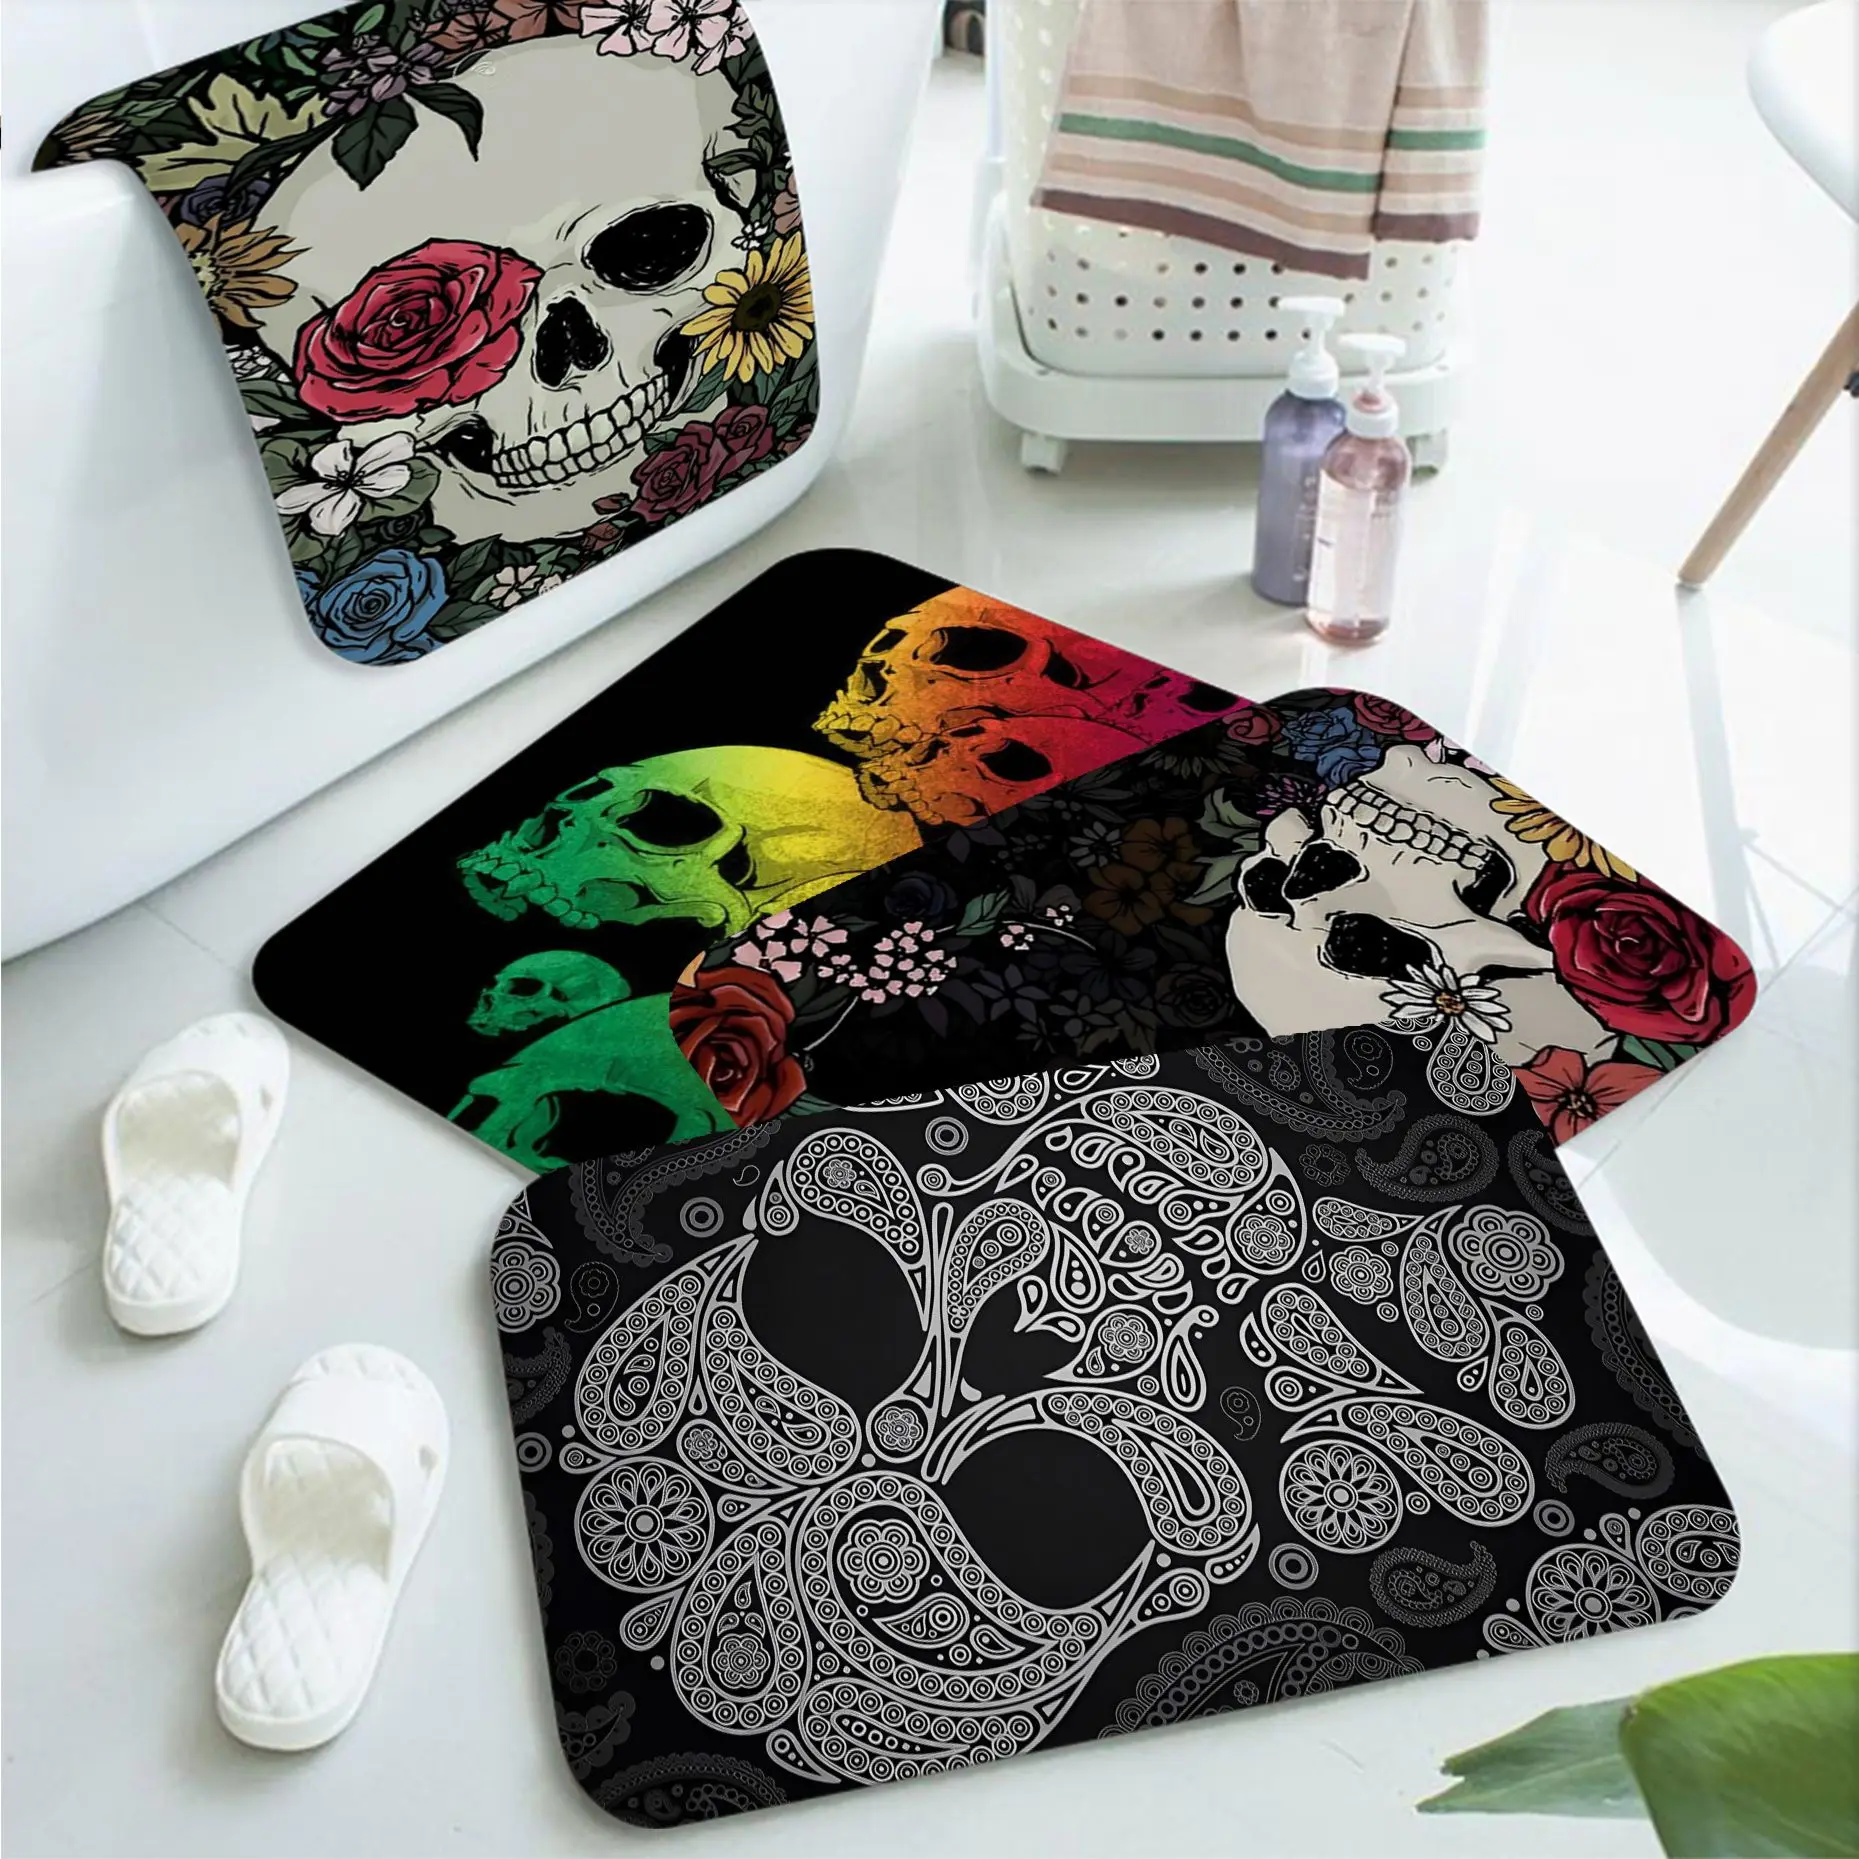 

Horror Skull Bath Mat Rectangle Anti-slip Home Soft Badmat Front Door Indoor Outdoor Mat Welcome Doormat